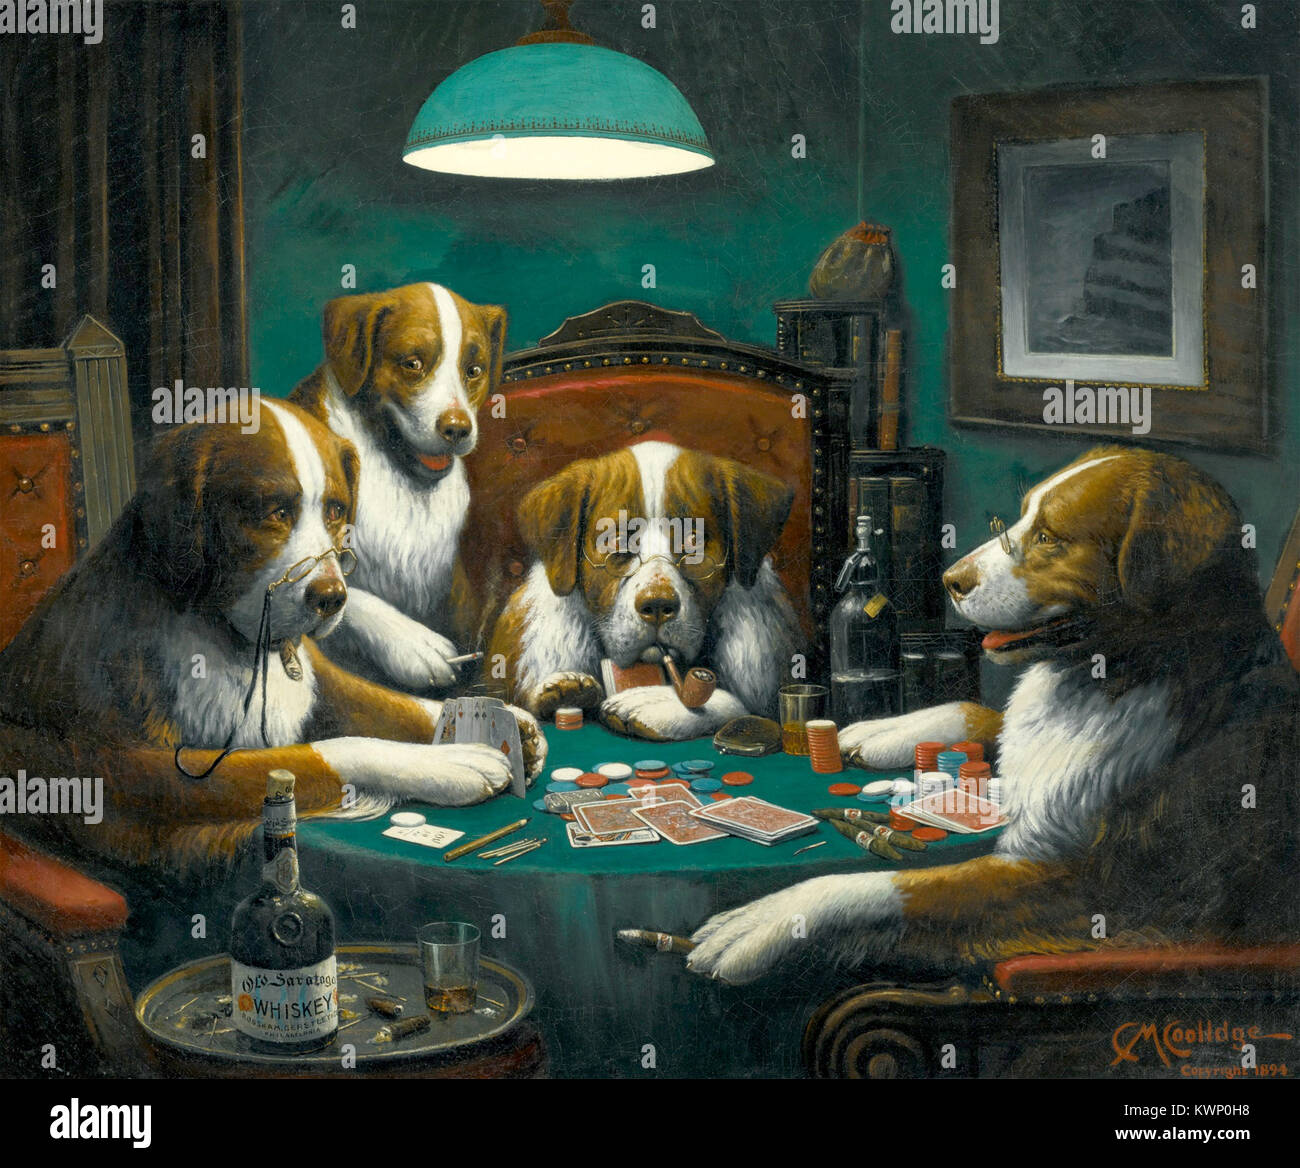 Perros jugando poker fotografías e imágenes alta resolución - Alamy